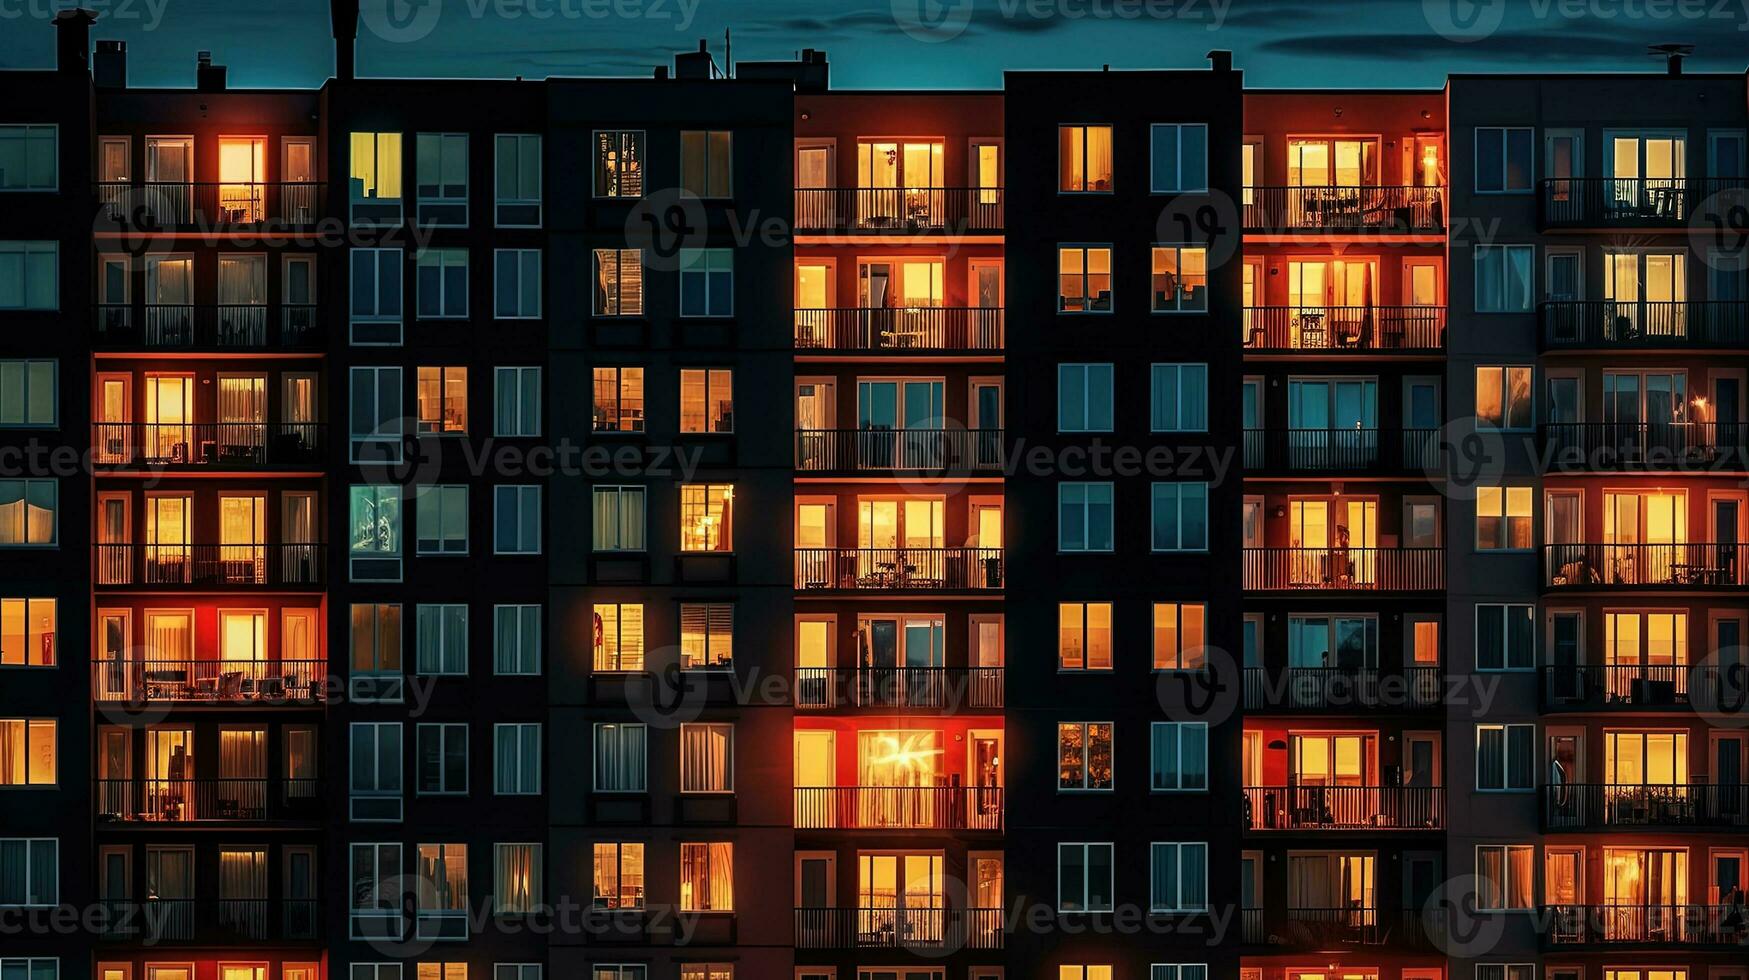 zündete Fenster von hoch Wohnung Gebäude beim Nacht städtisch Hintergrund. Silhouette Konzept foto